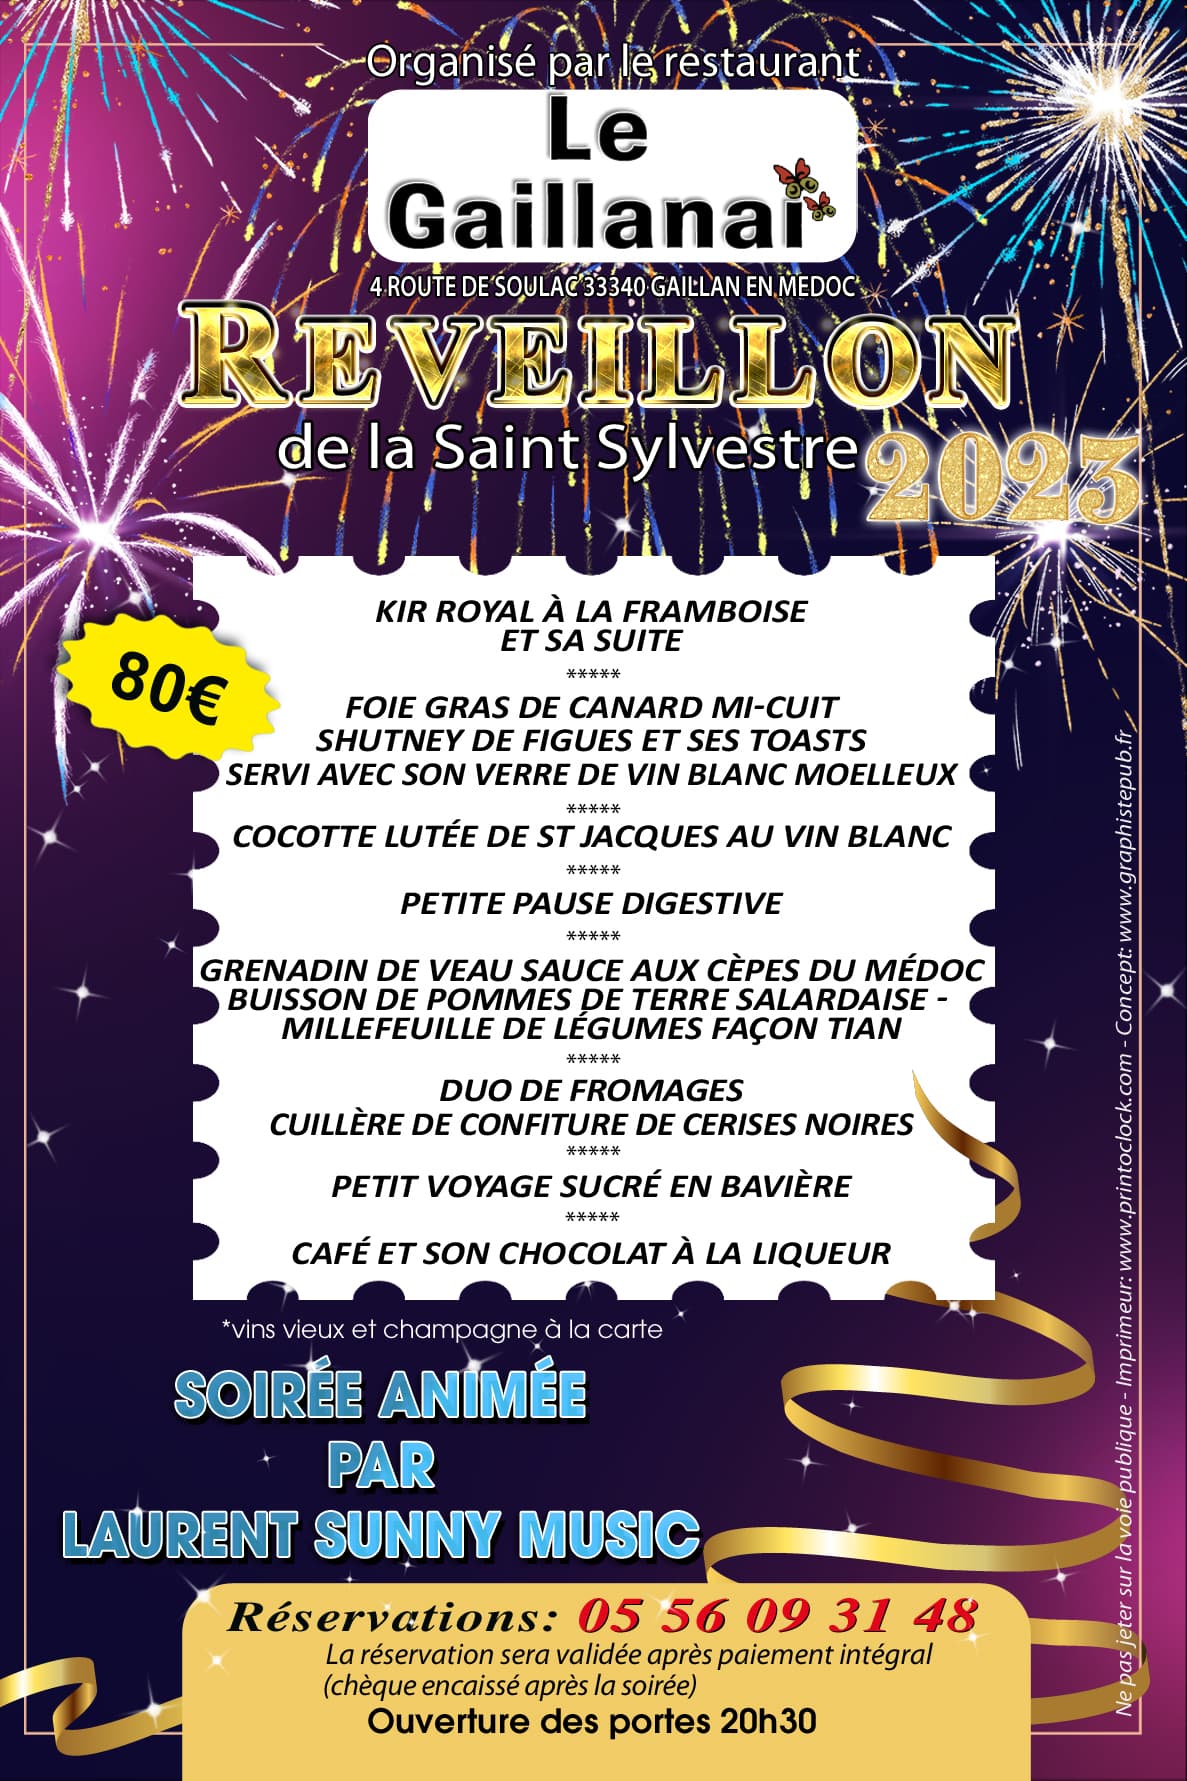 Le Gaillanai -  Réveillon de la Saint Sylvestre 2023. Soirée animé par Laurent Sunny Music. Flyer de présentation du menu.